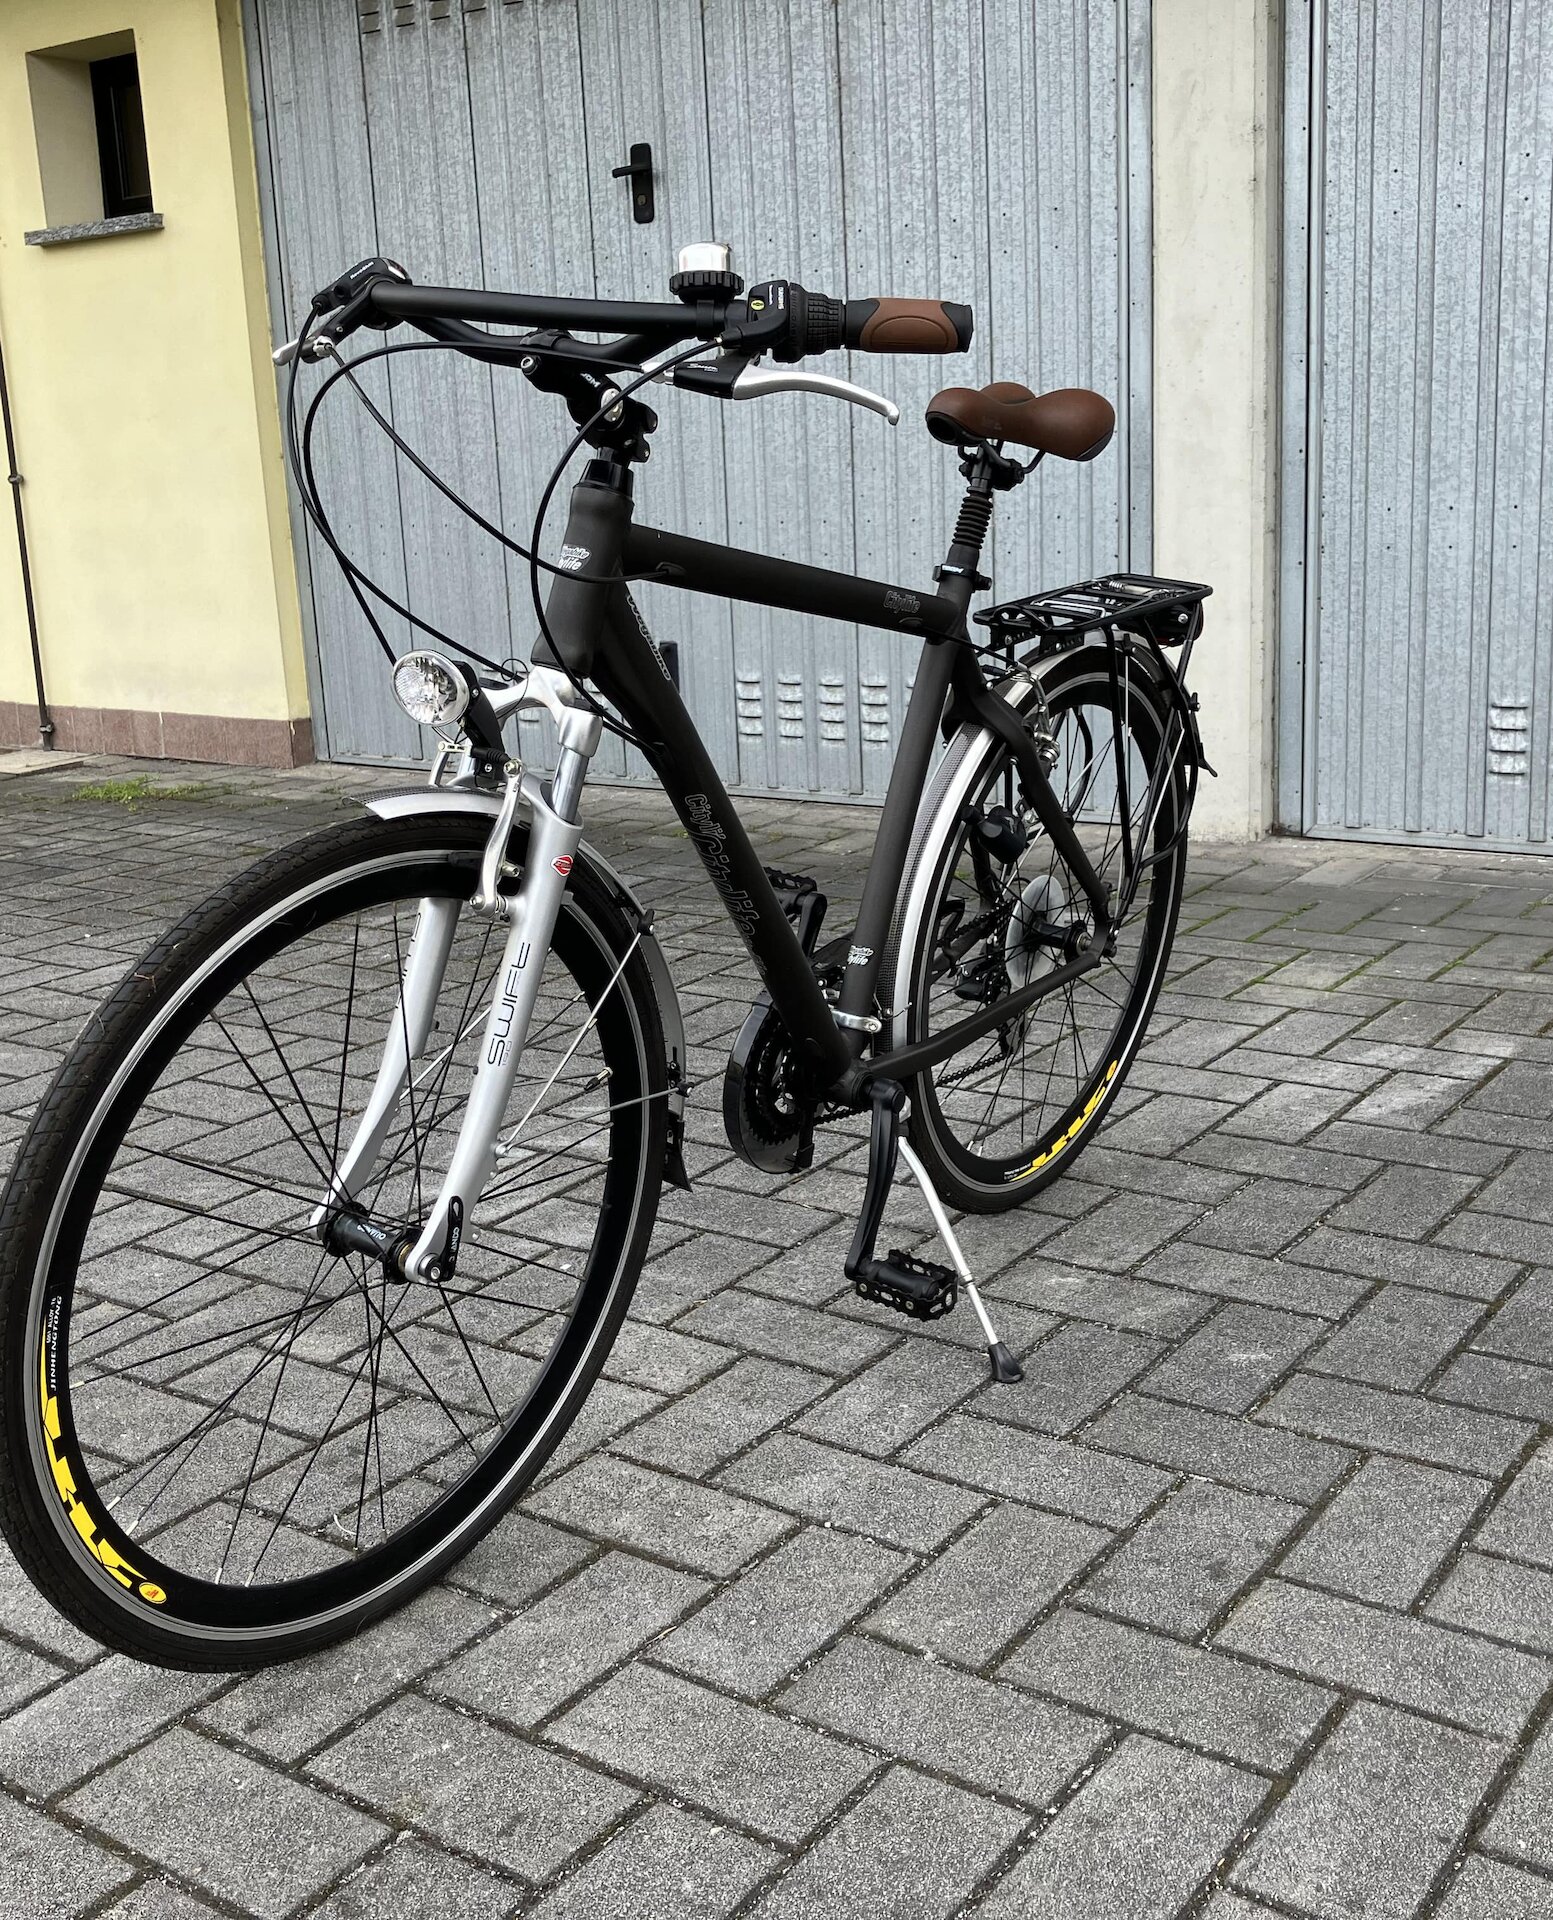 Cerca bicicletta Wega bike  usata o km0